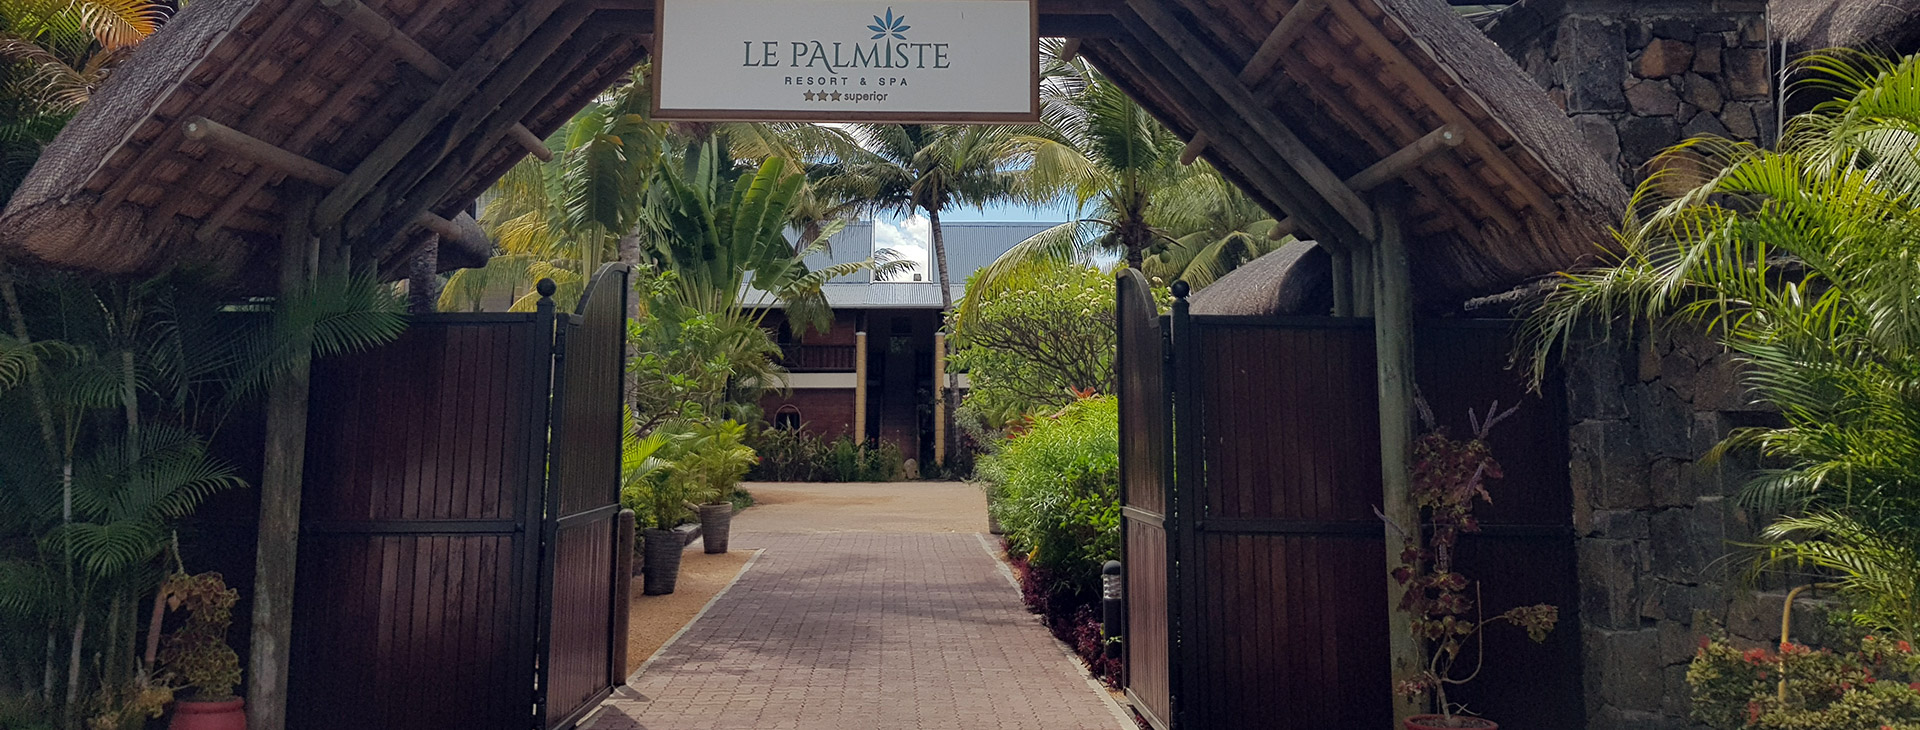 Le Palmiste Resort & Spa Obrázek11